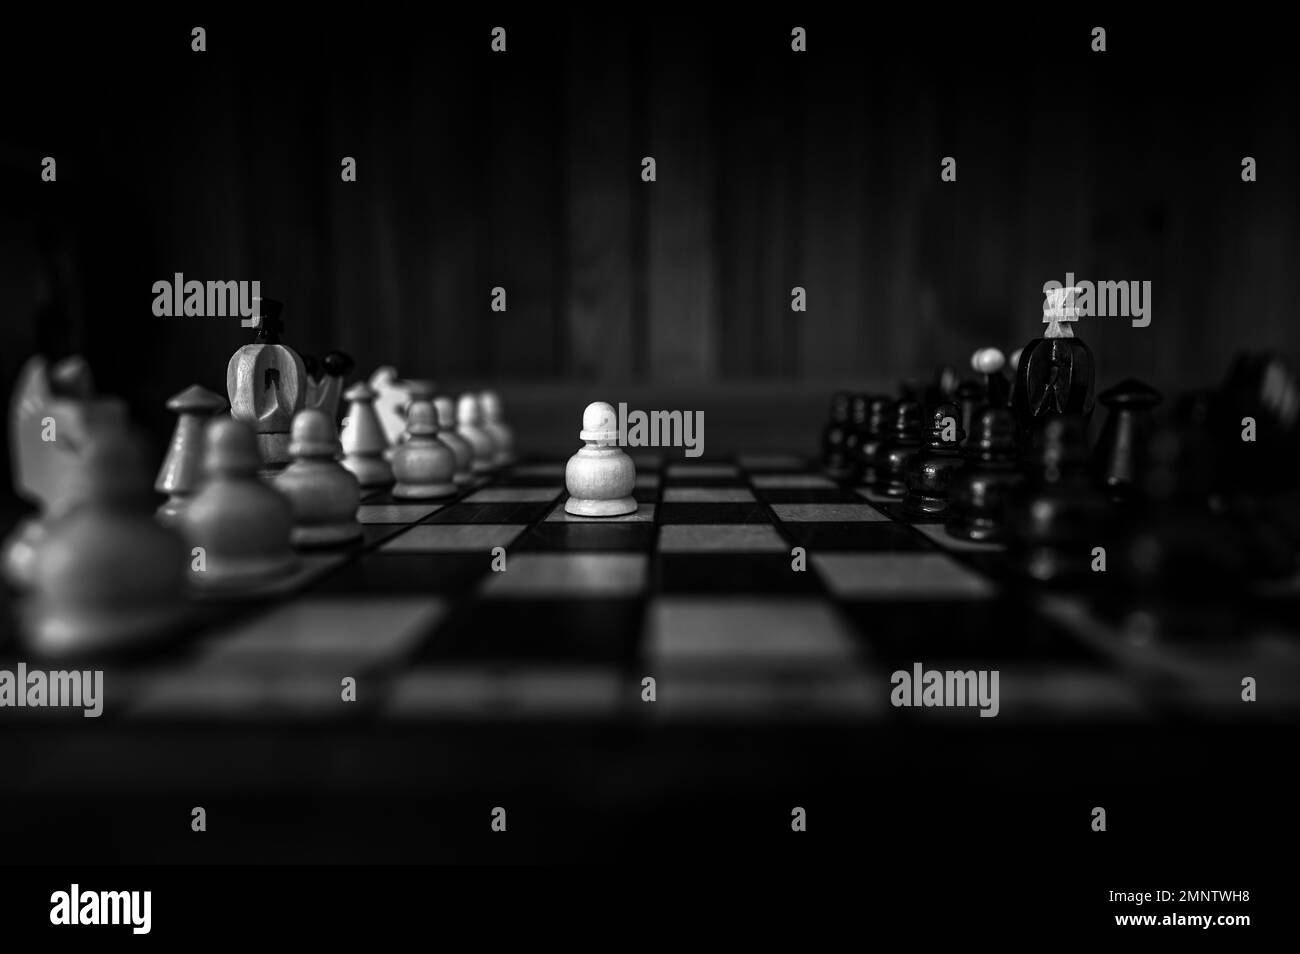 Arrière-plan noir et blanc flou avec une faible profondeur de mise au point. L'ensemble de pièces d'échecs en bois des éléments debout sur le plateau d'échecs sur fond sombre. Banque D'Images